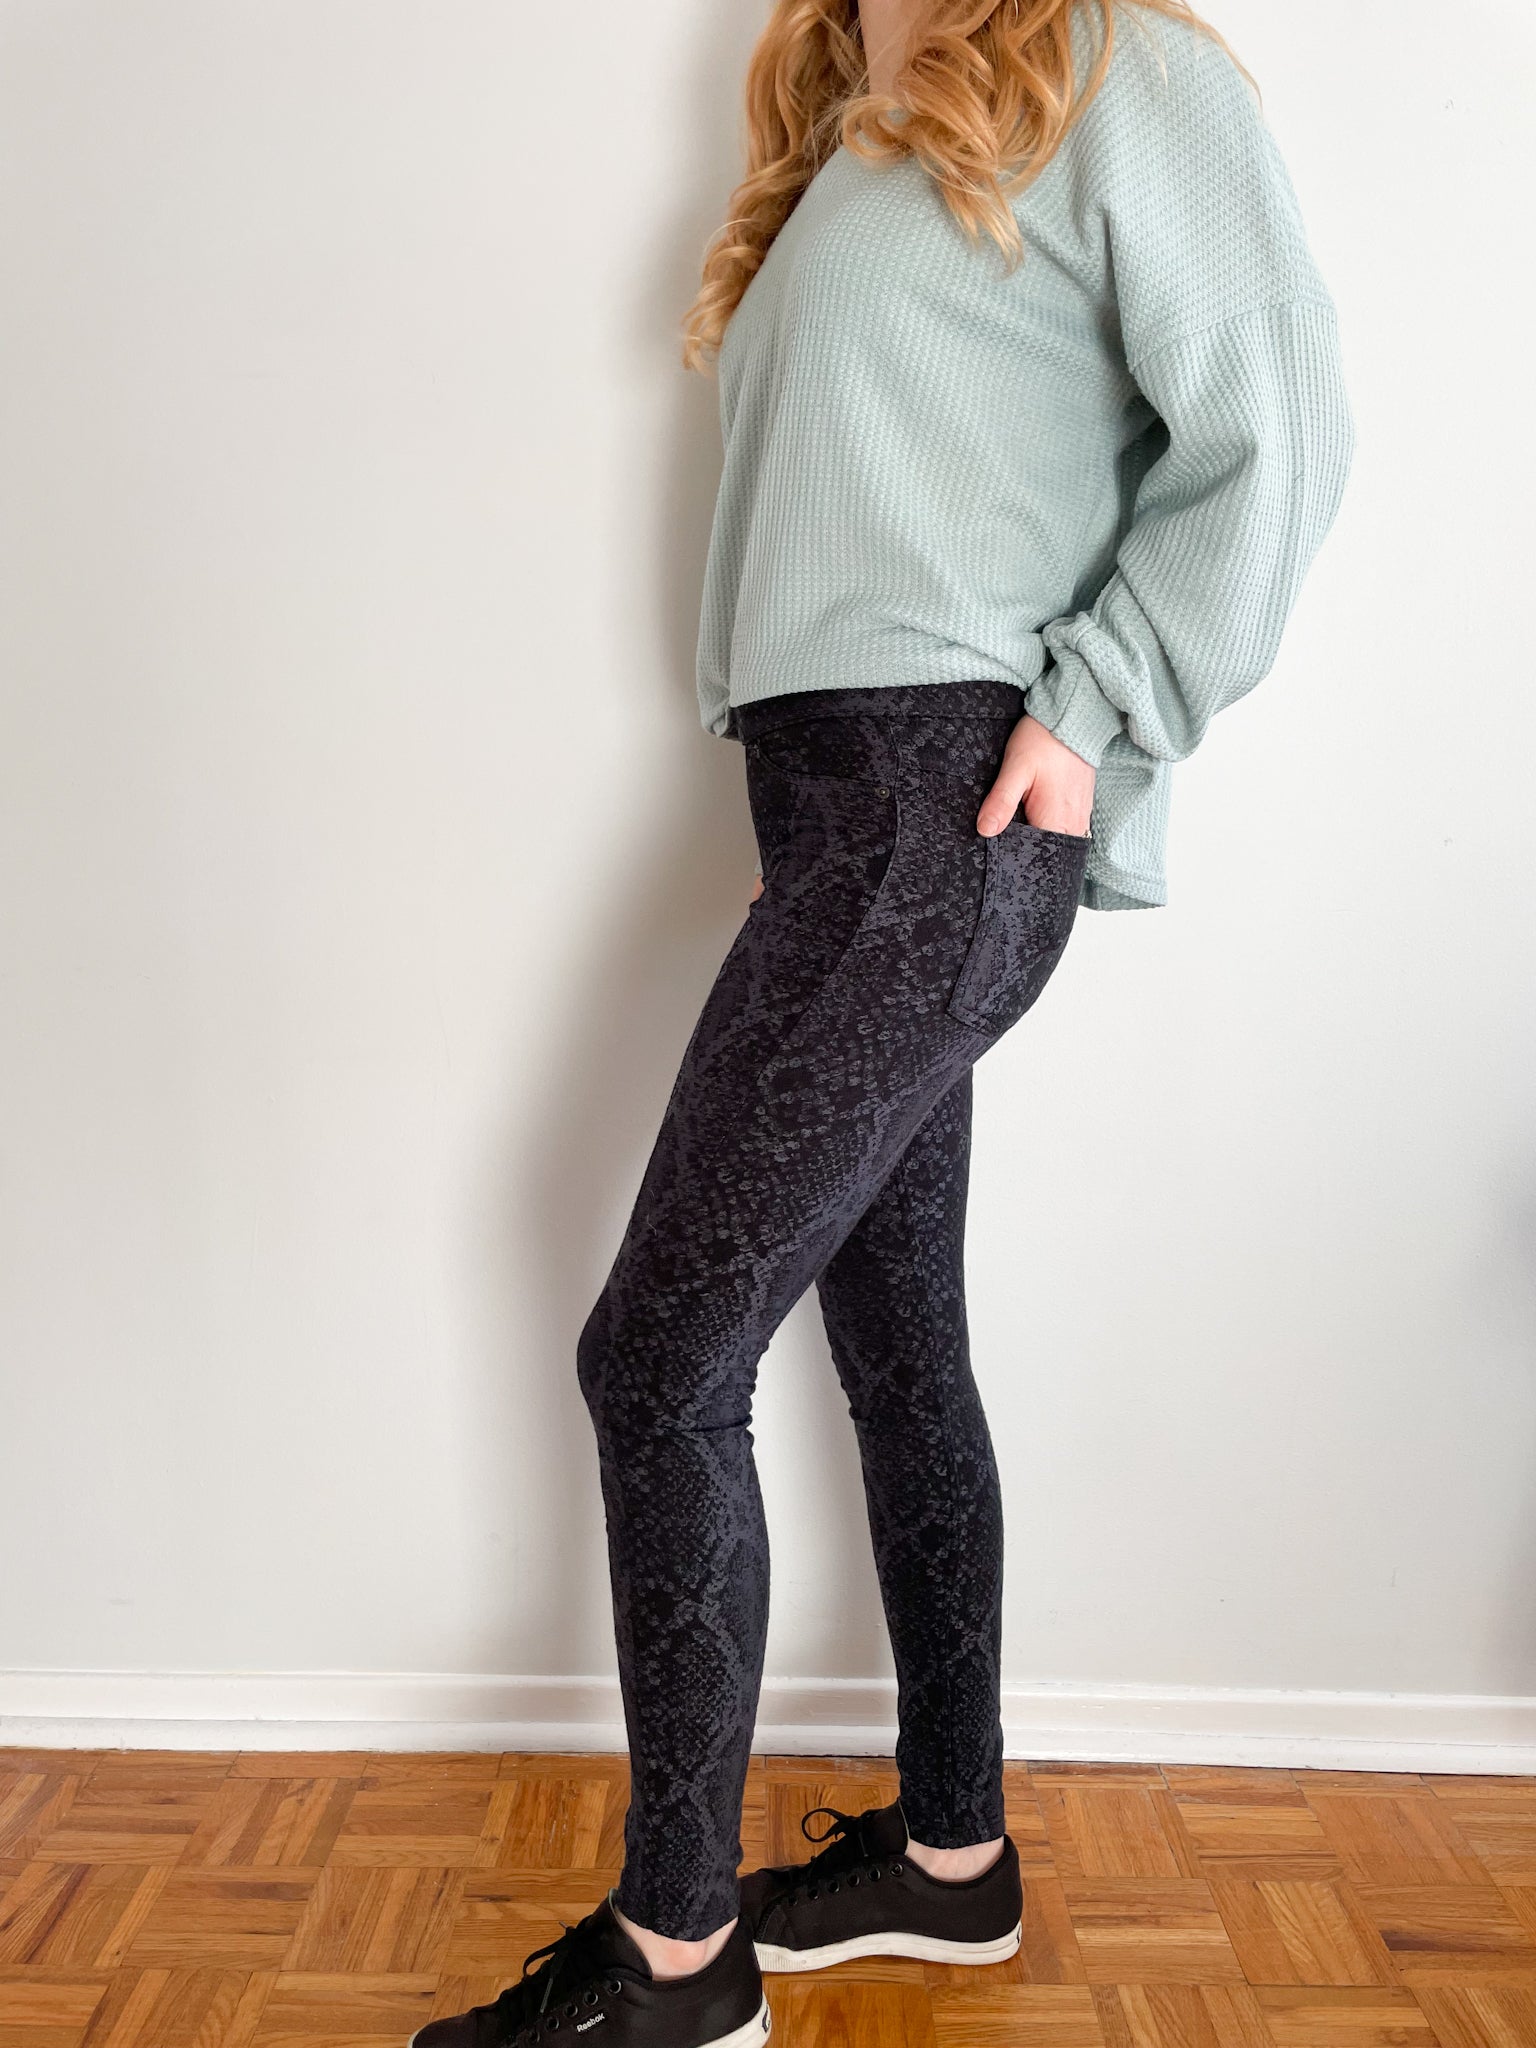 Hue Black Grey Snake Print Legging Pants - XS – Le Prix Fashion